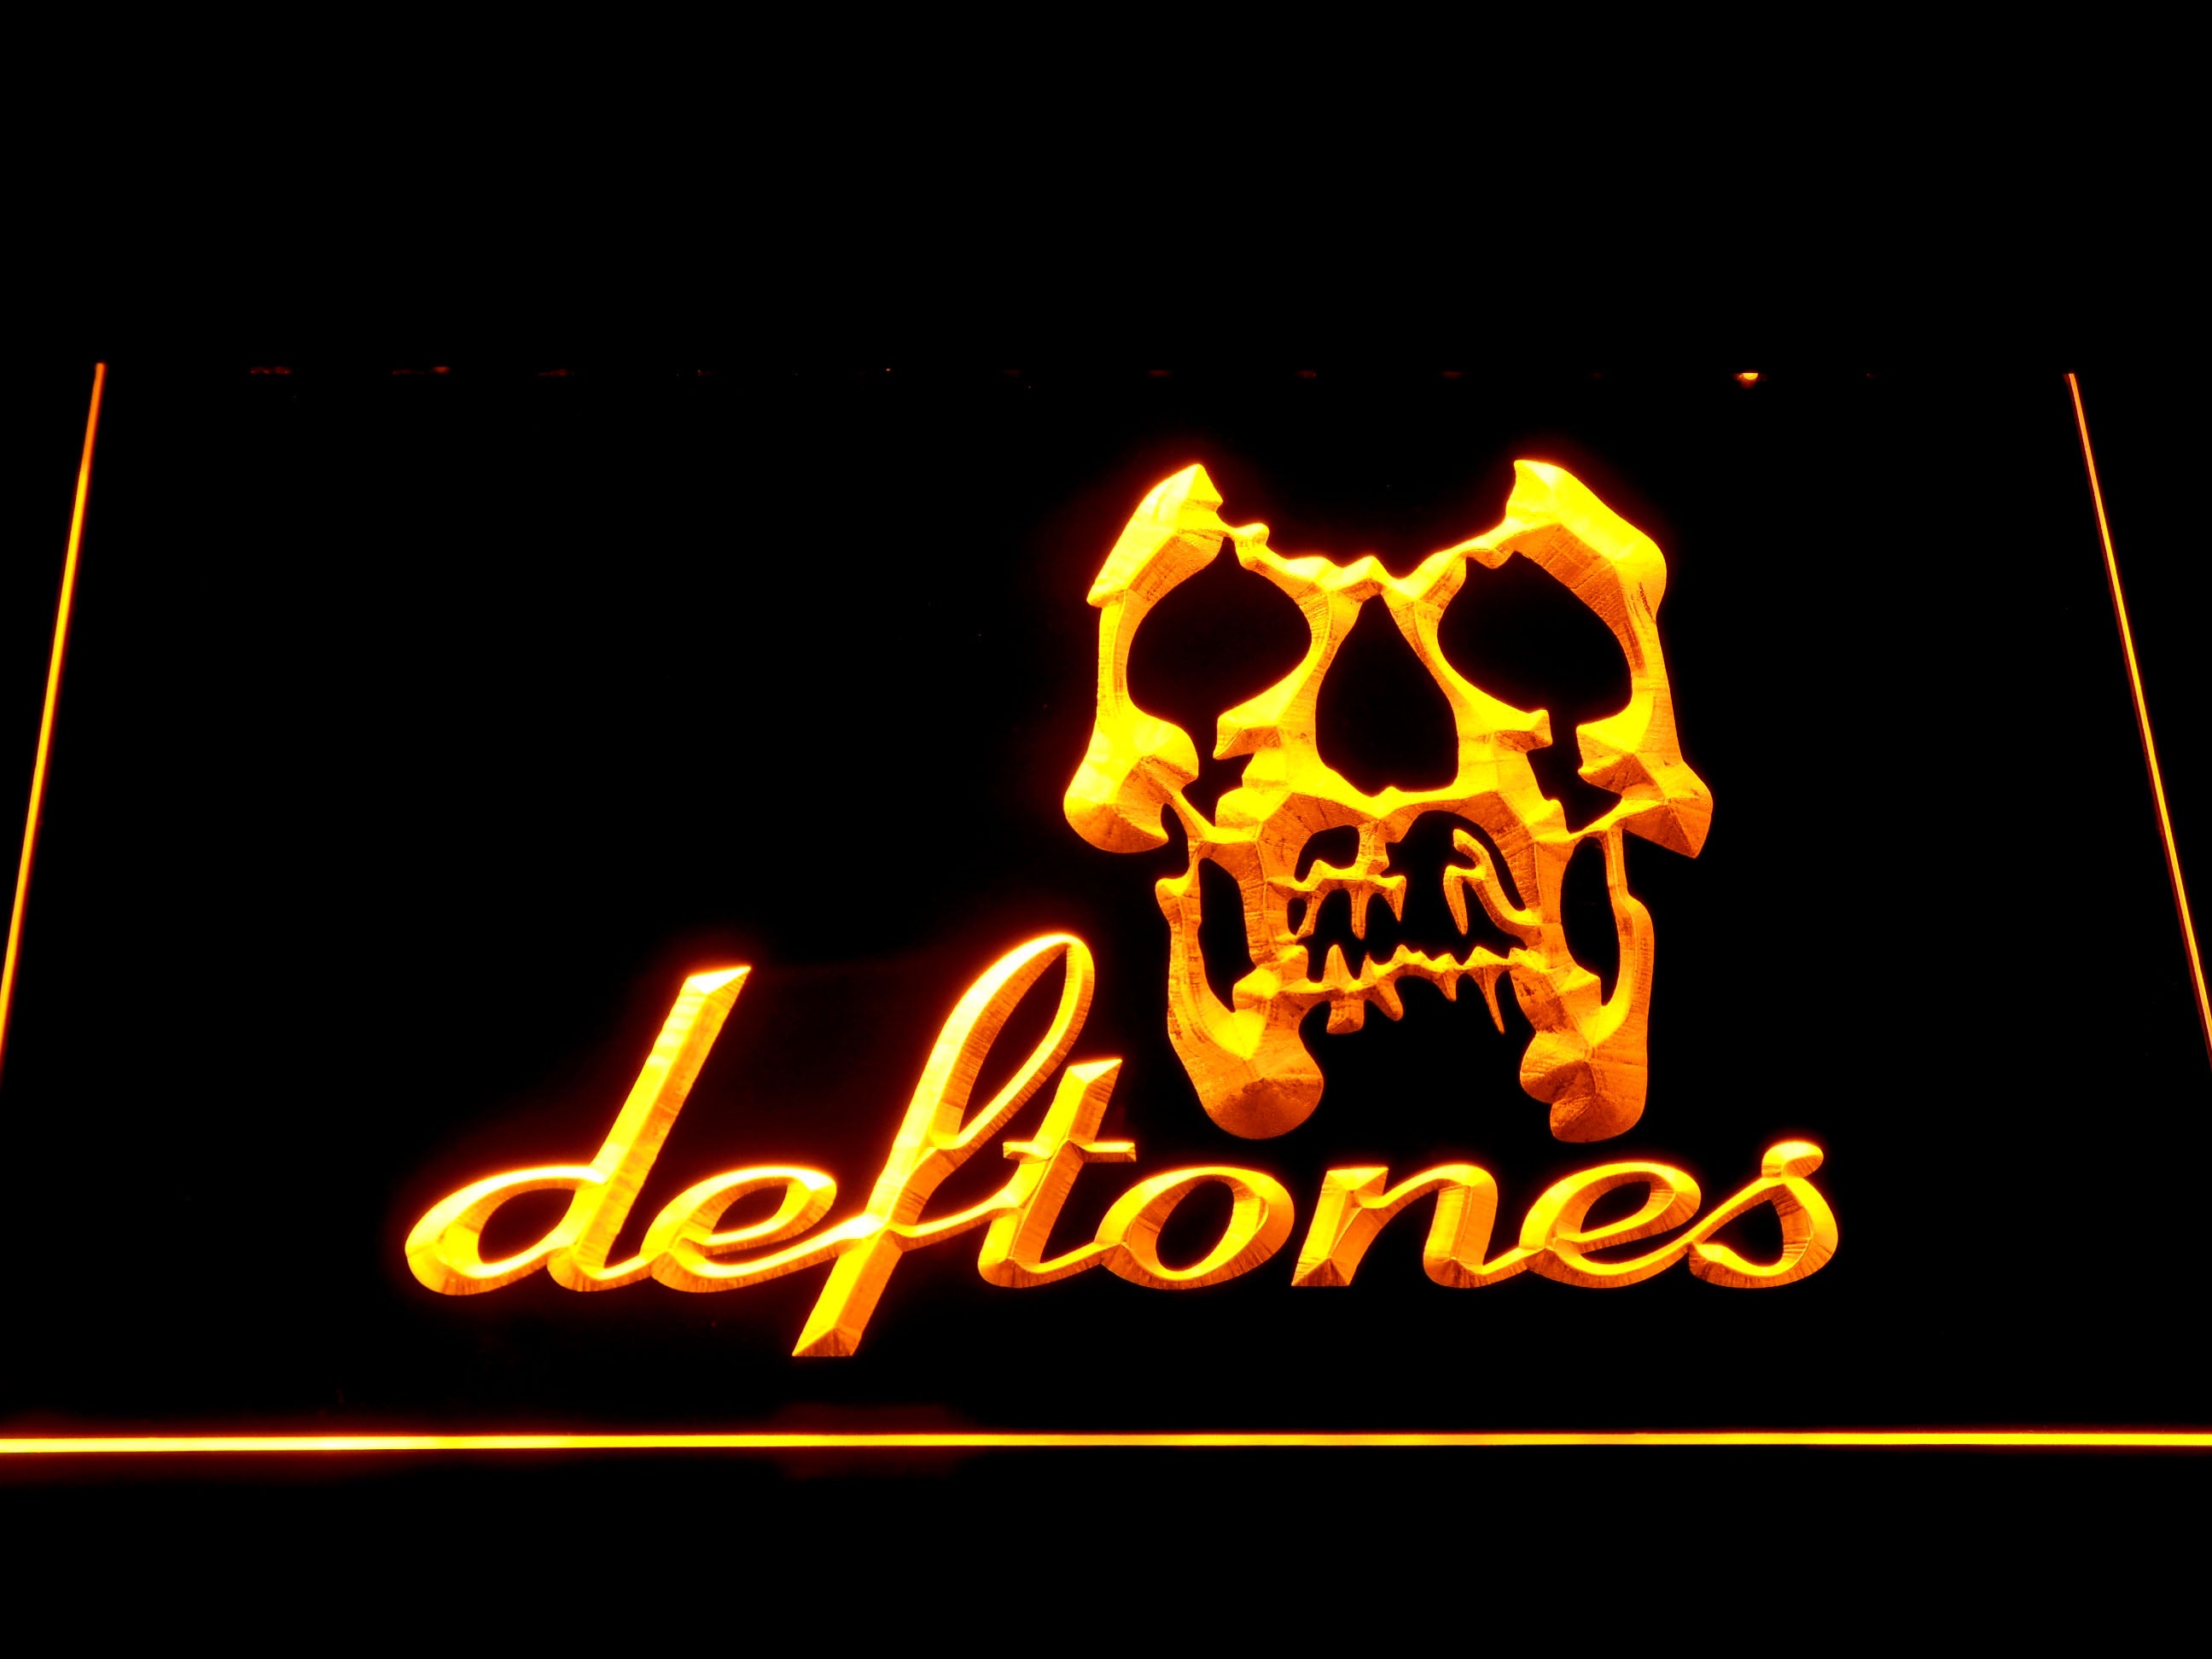 Deftones Skull Metal Band Neon Light LED Sign